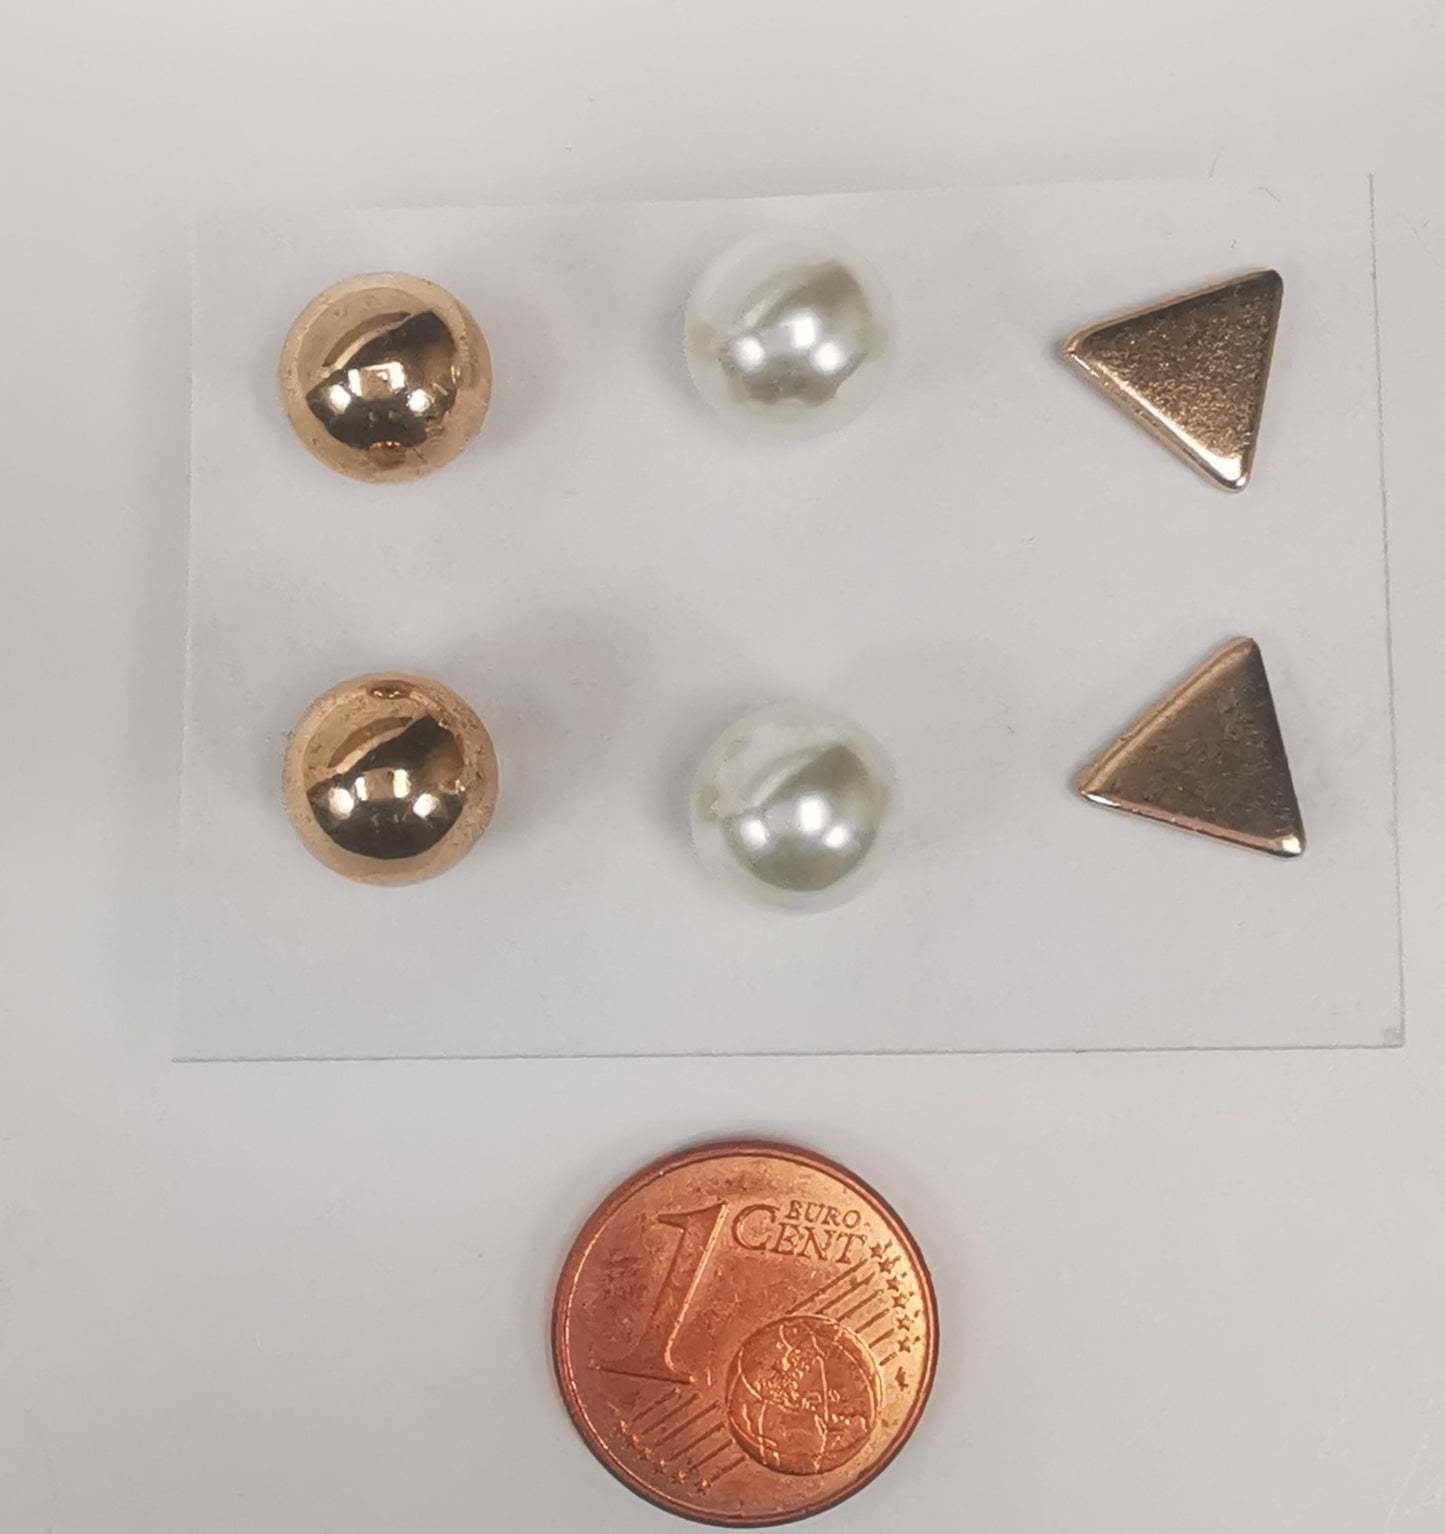 Trios de boucles d'oreilles clous fantaisie, la première est un triangle doré, la deuxième une perle fantaisie et la troisième une sphère dorée. Présentées plantées sur un fond blanc, au dessus d'une pièce de 1 centime, vue de dessus.